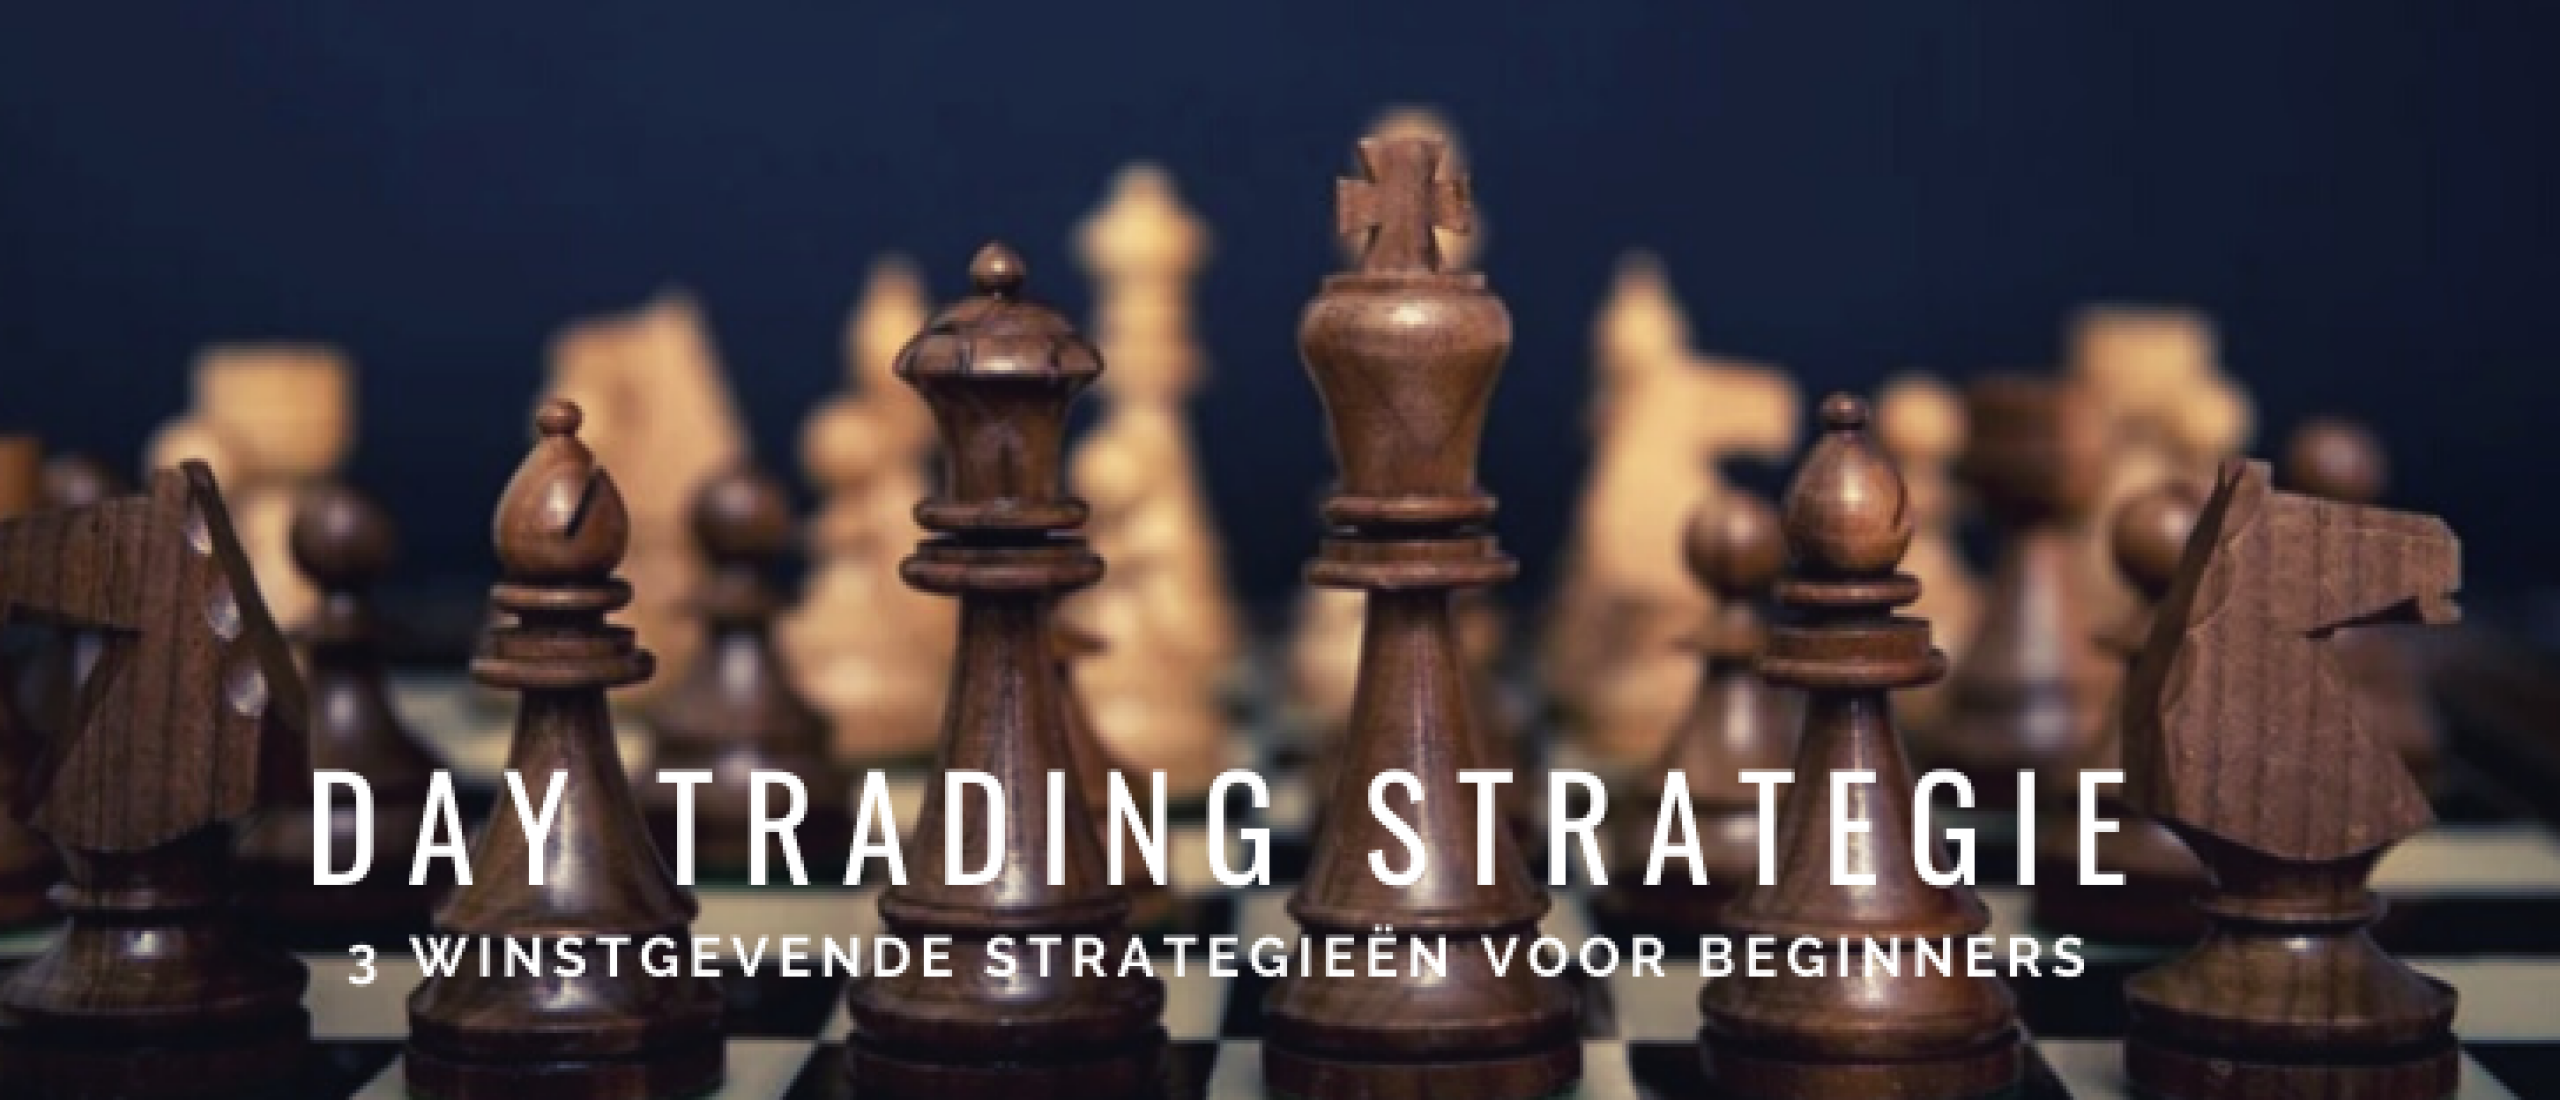 3x Winstgevende Day Trading Strategie voor Beginners